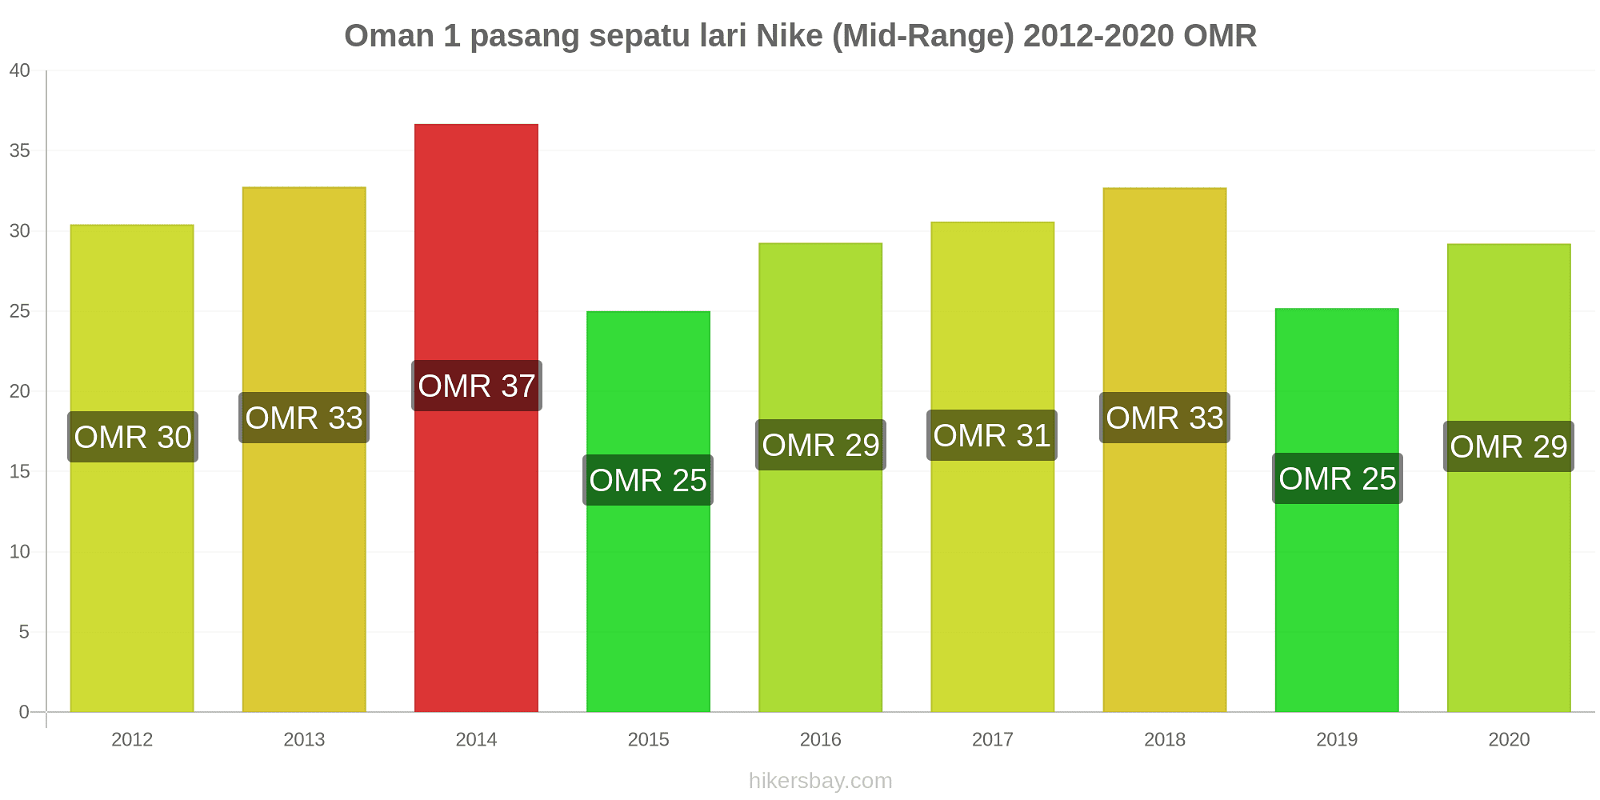 Oman perubahan harga 1 pasang sepatu lari Nike (Mid-Range) hikersbay.com